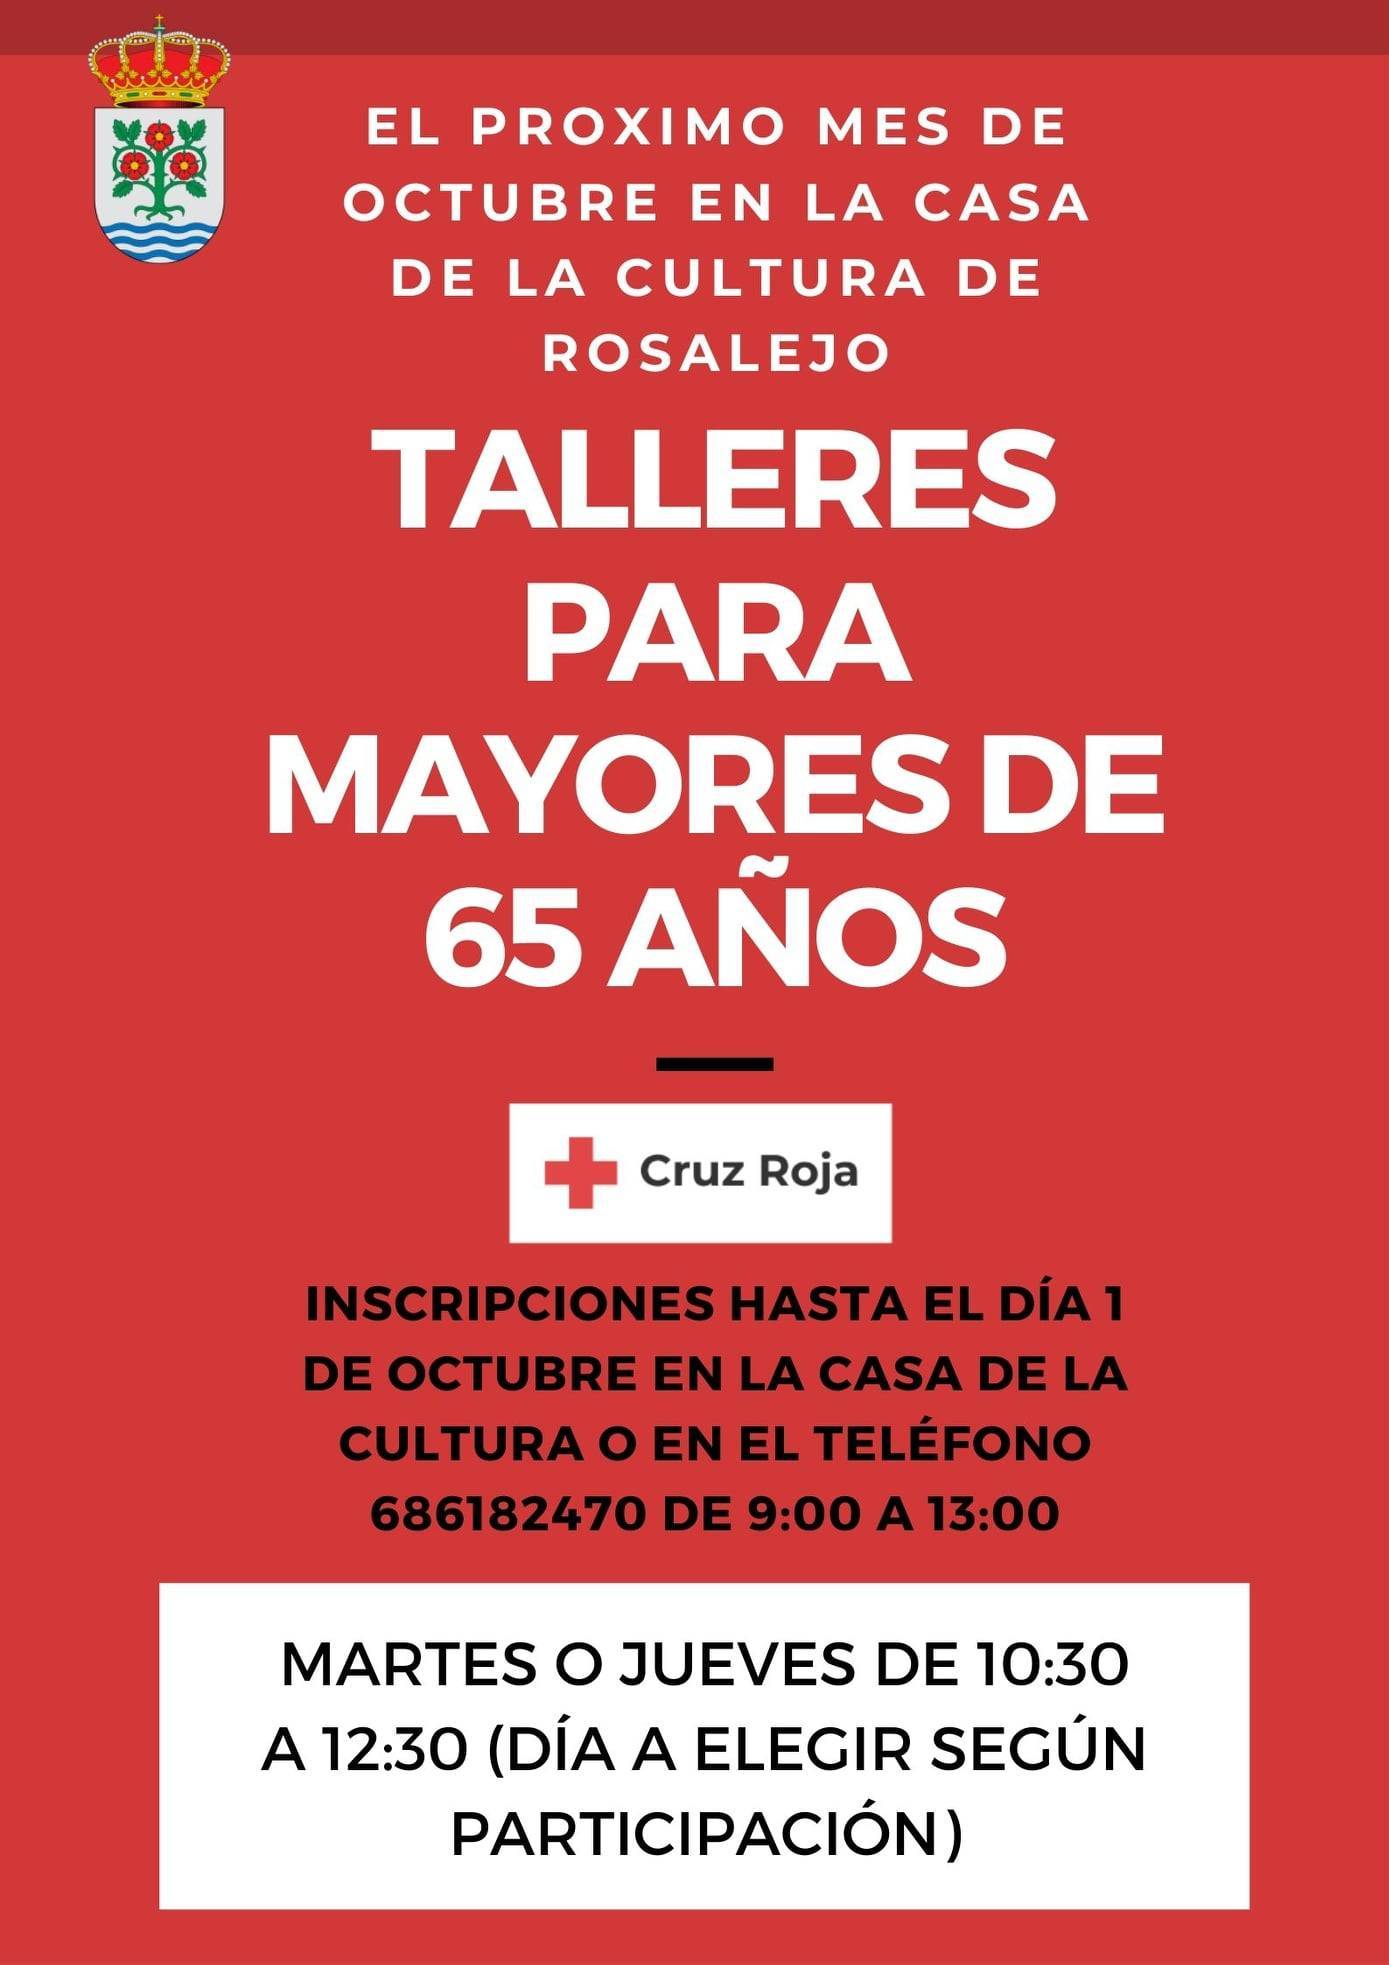 Talleres para mayores de 65 años (octubre 2021) - Rosalejo (Cáceres)